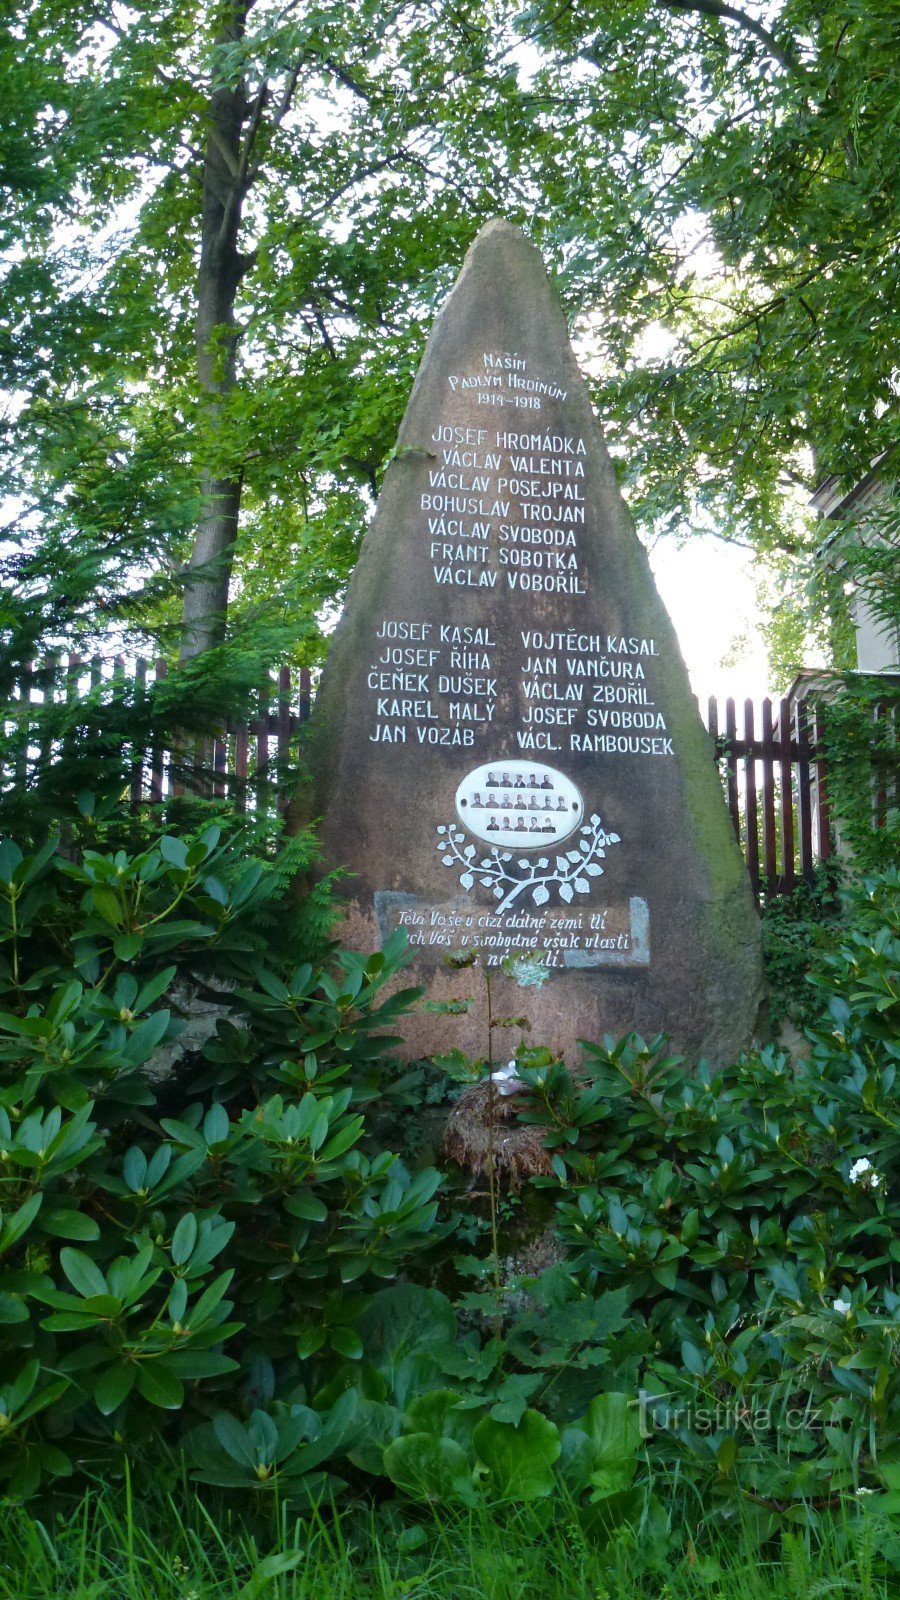 În monument sunt gravate 17 nume